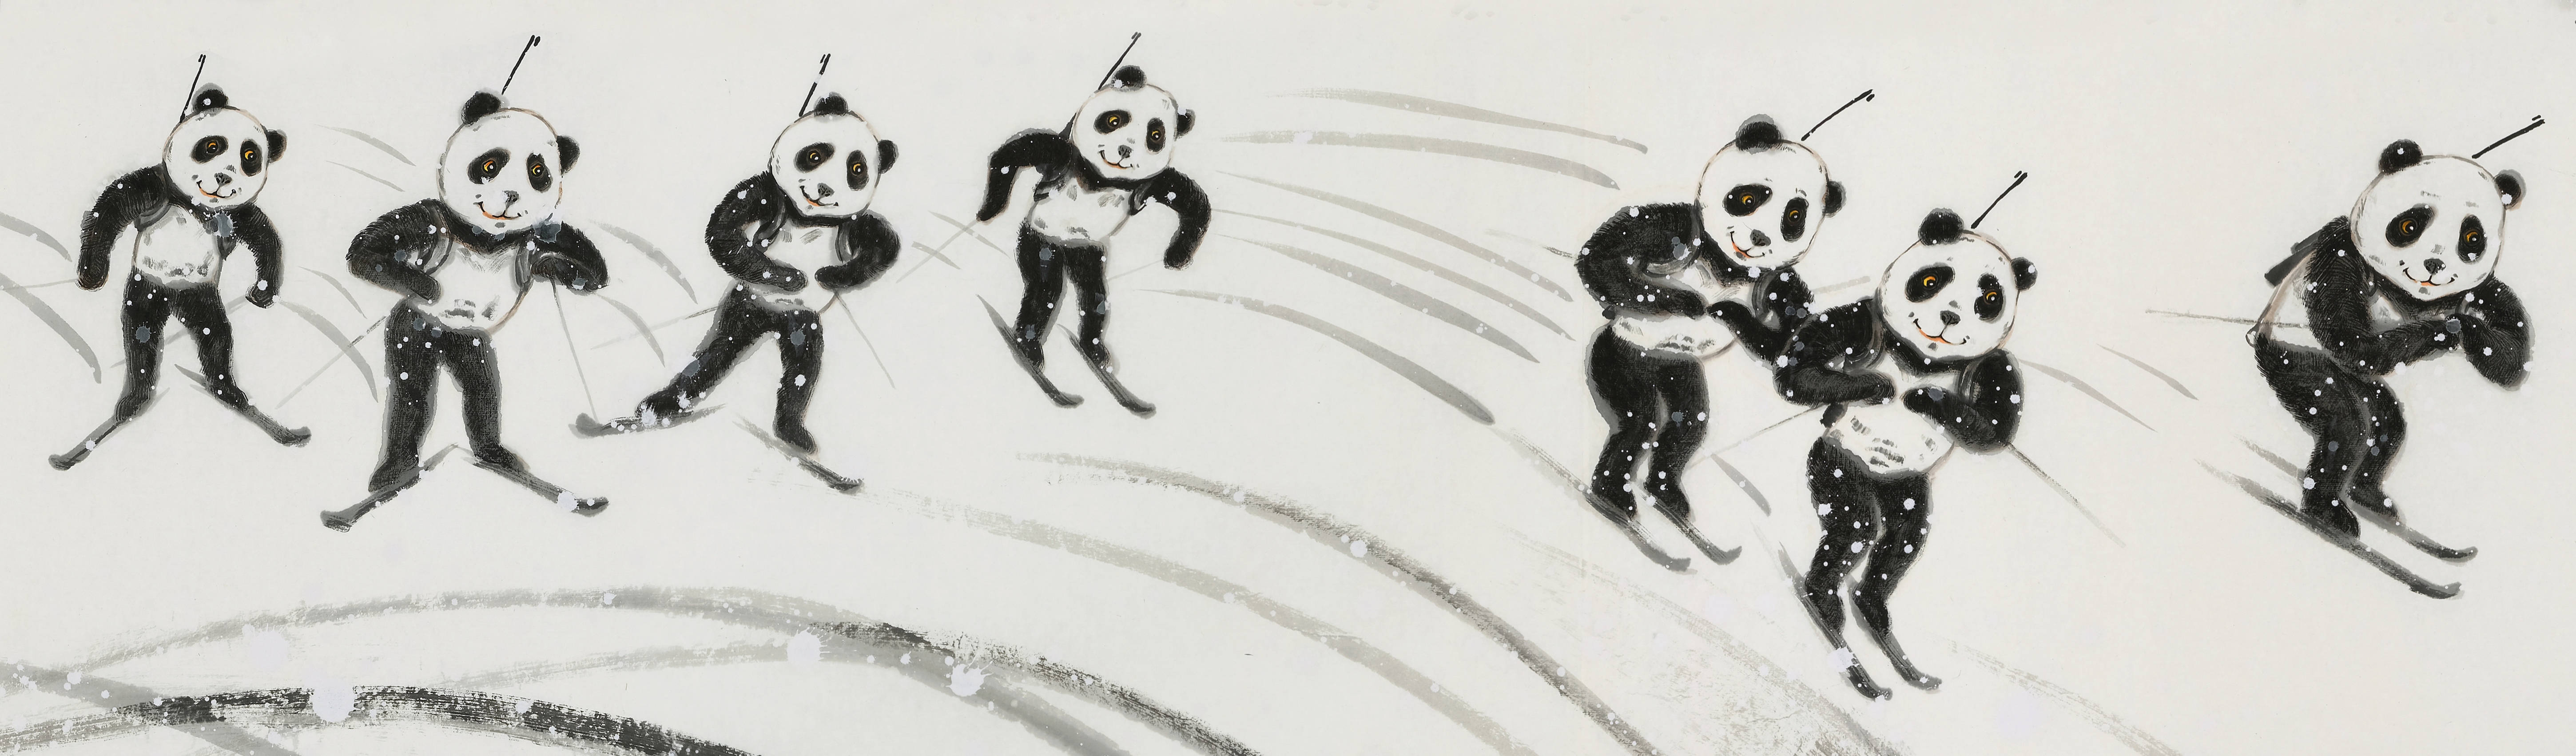 熊猫刘中绘百米长卷赞北京冬奥讲述刘中创作《冰雪国宝万里图》的故事